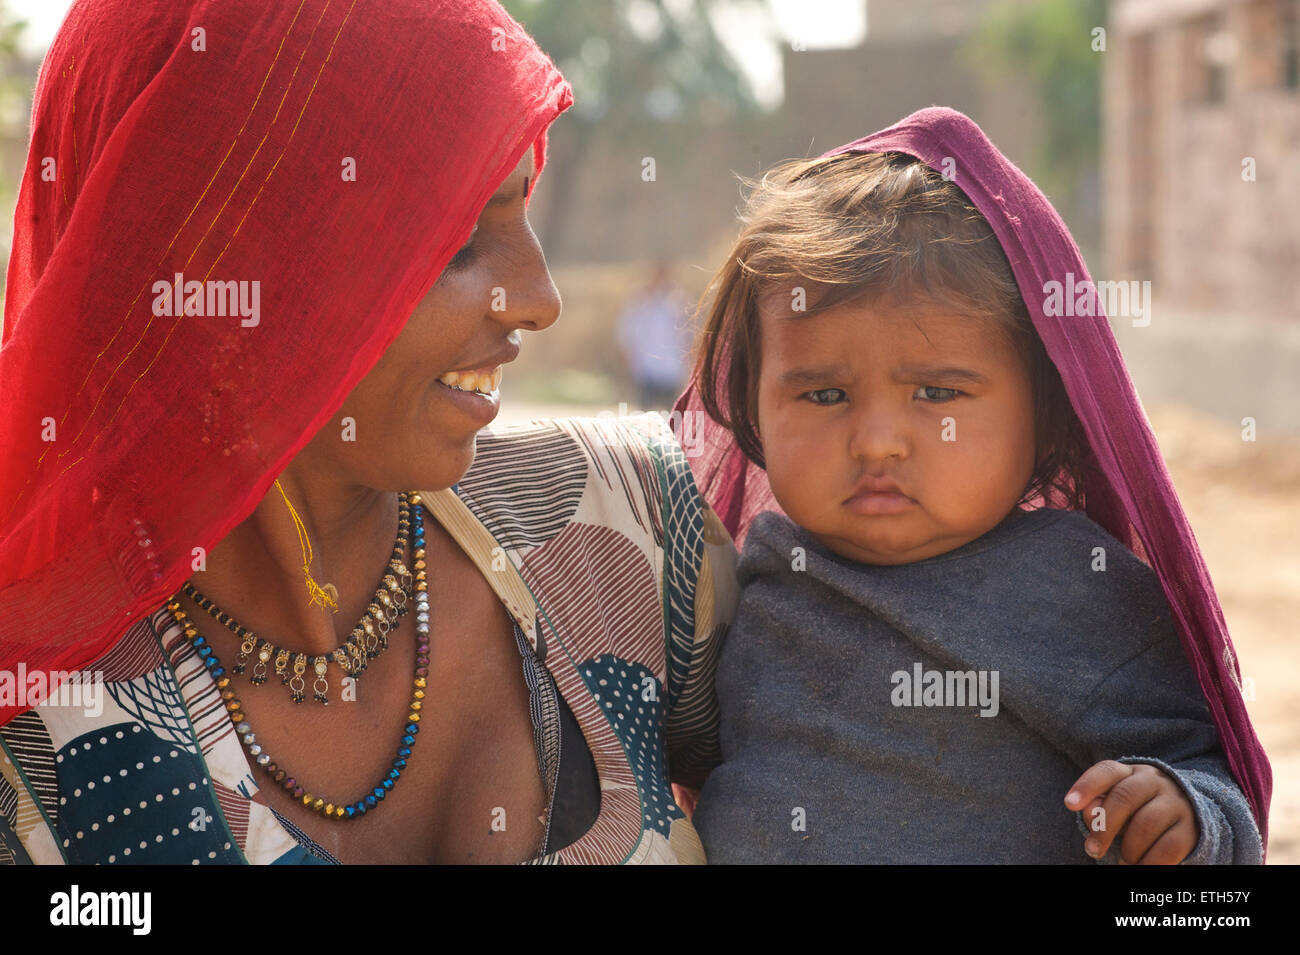 Indische Frau in Sari mit ihrem Kind in die Arme. Jodhpur, Rajasthan, Indien Stockfoto